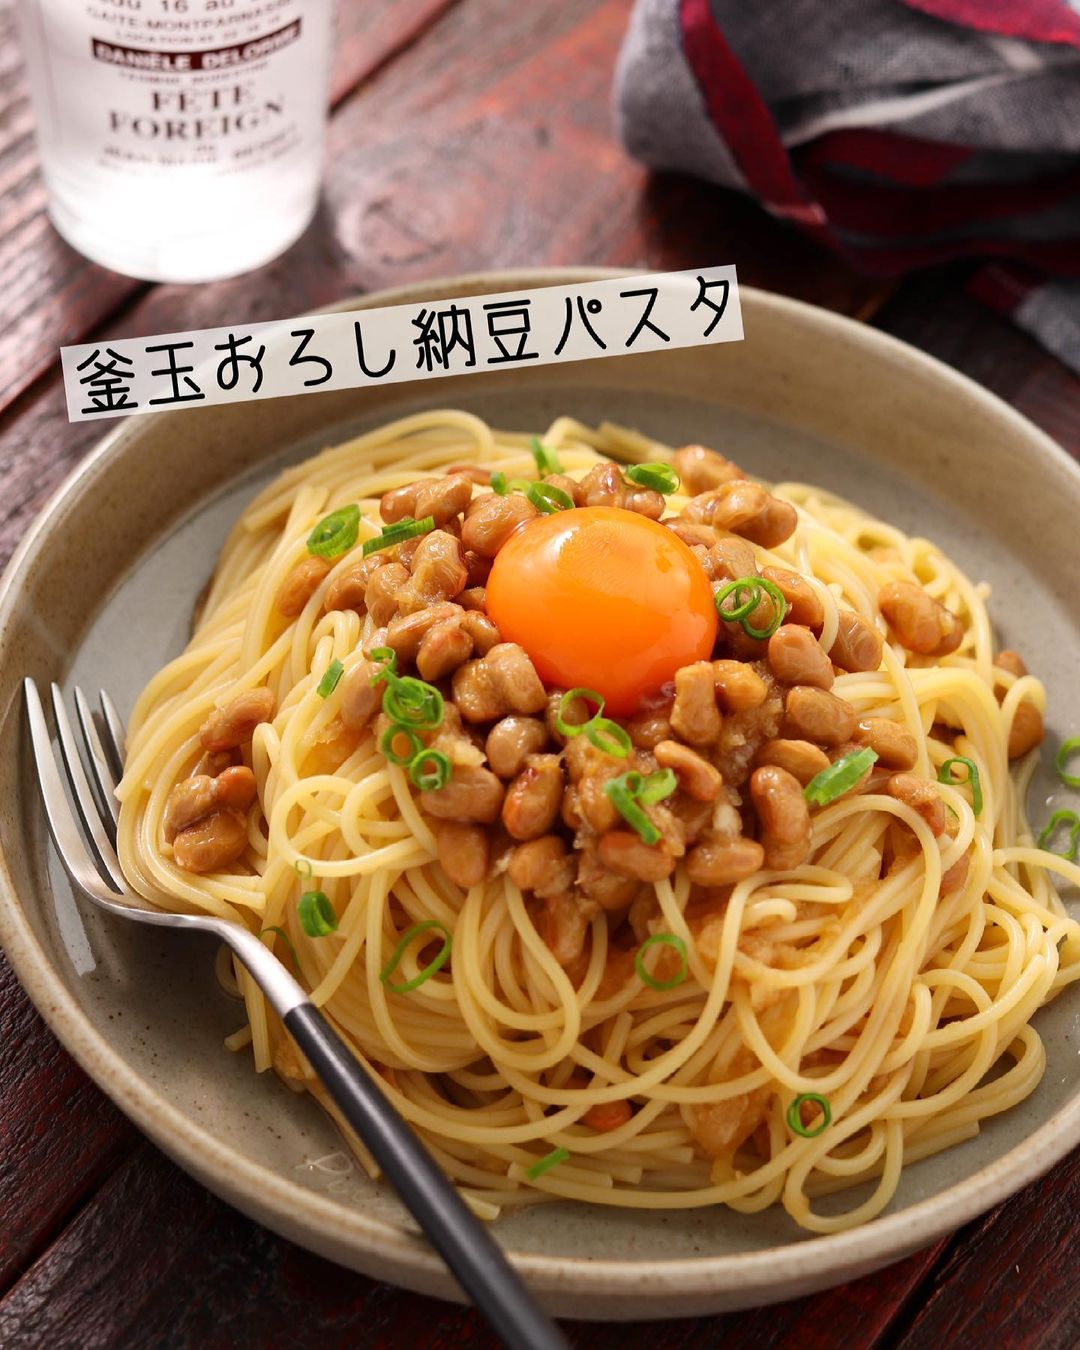 Yuu 和えるだけのヘルシーランチ レシピあり Ciao Nihon